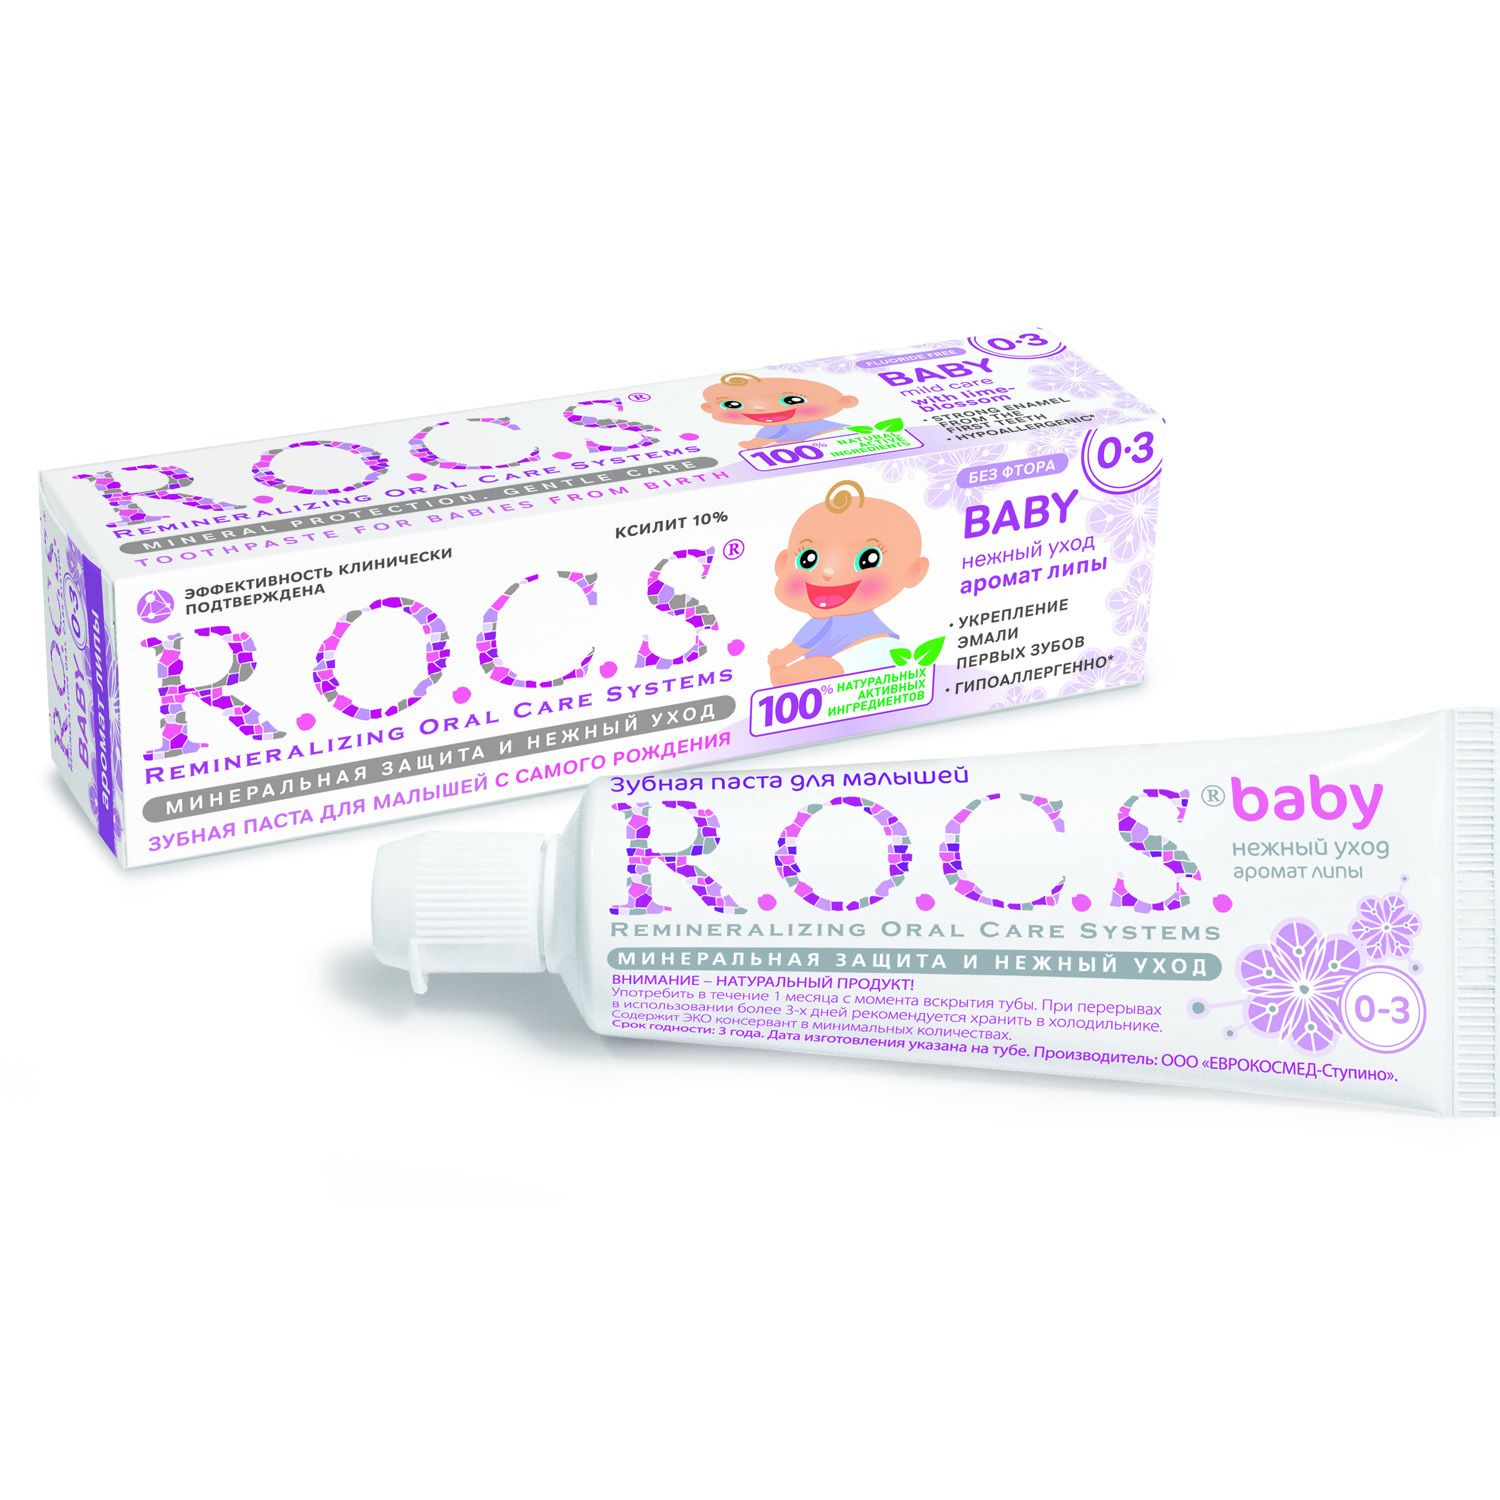 Зубная паста R.O.C.S. Baby Нежный уход - фото 1